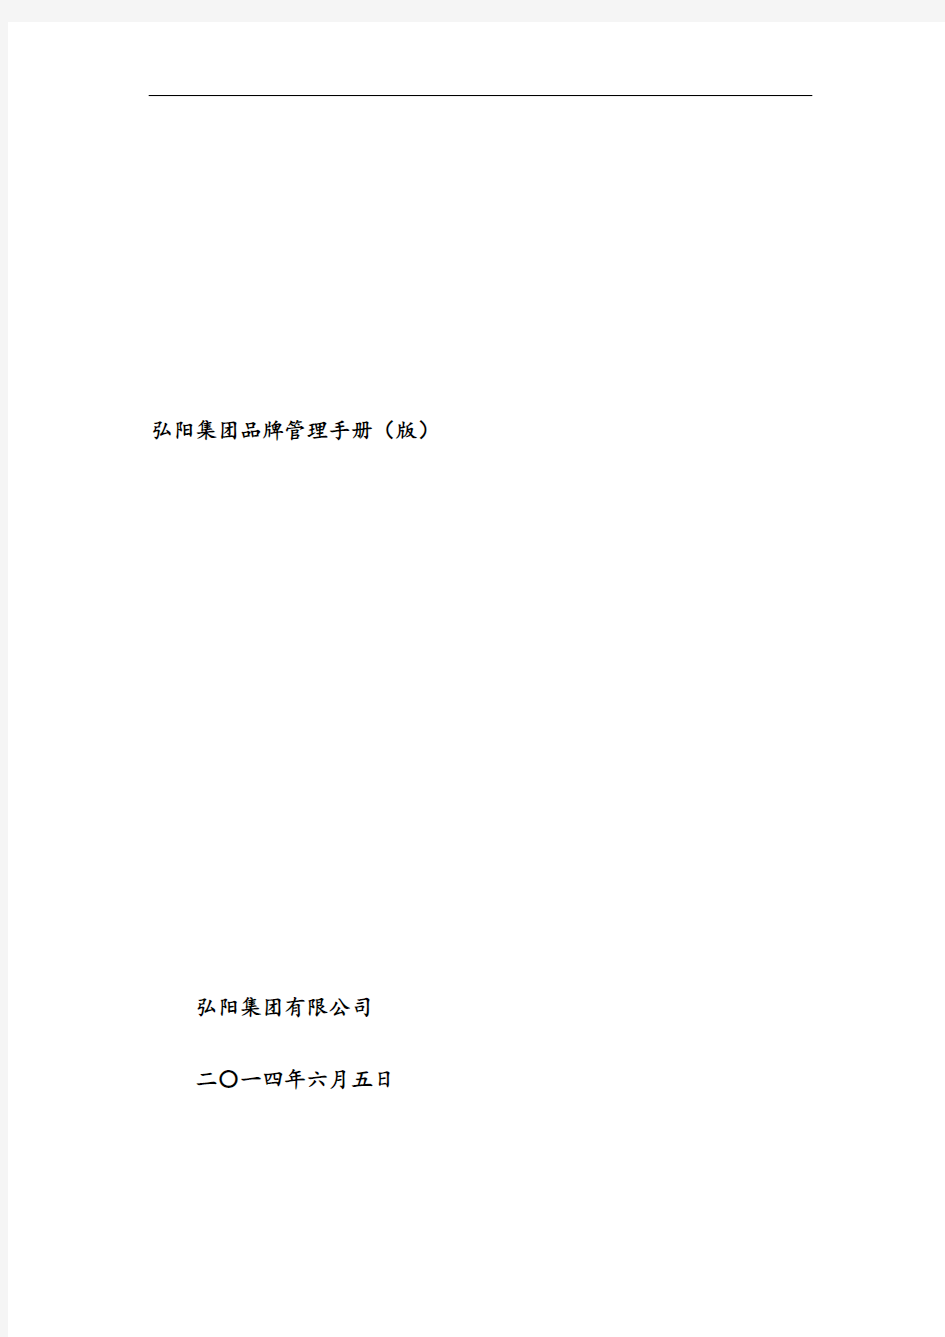 弘阳集团品牌管理手册(V1.0版)